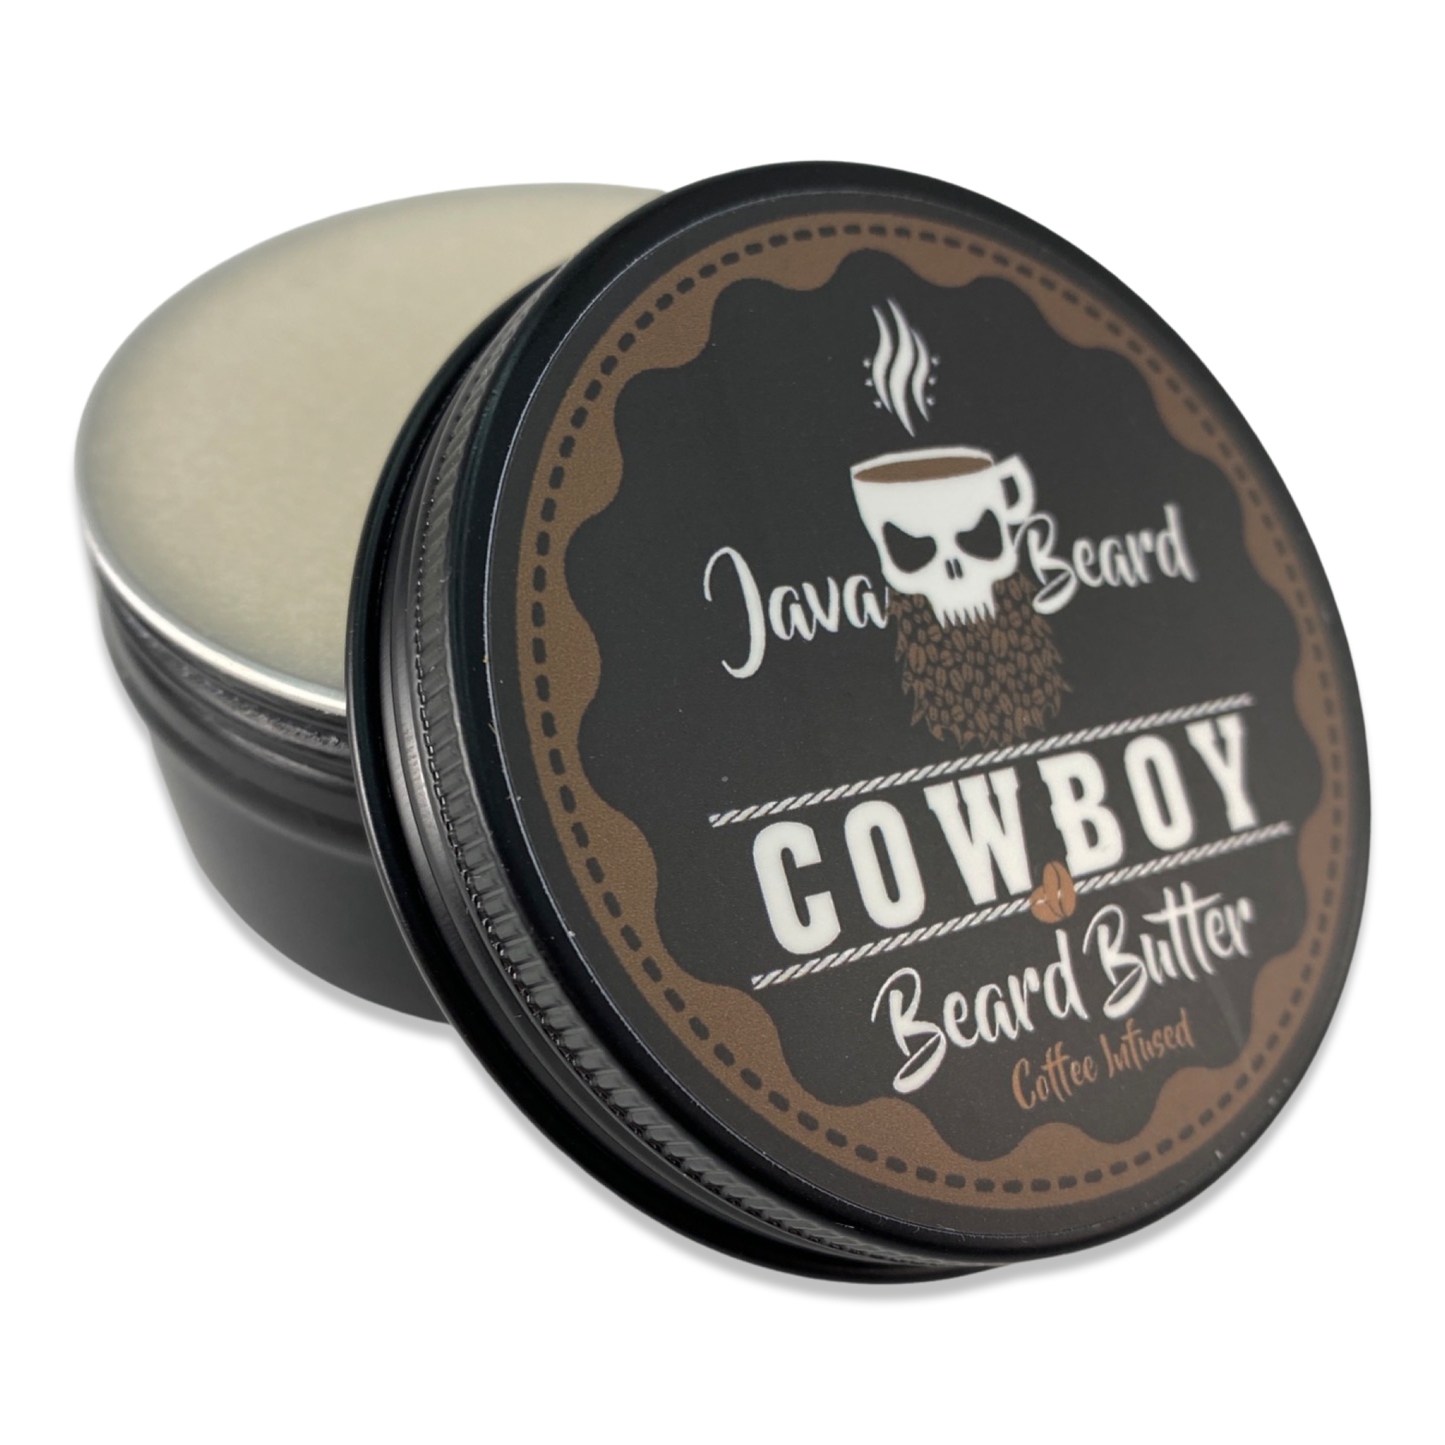 Java Beard Cowboy Beard Butter